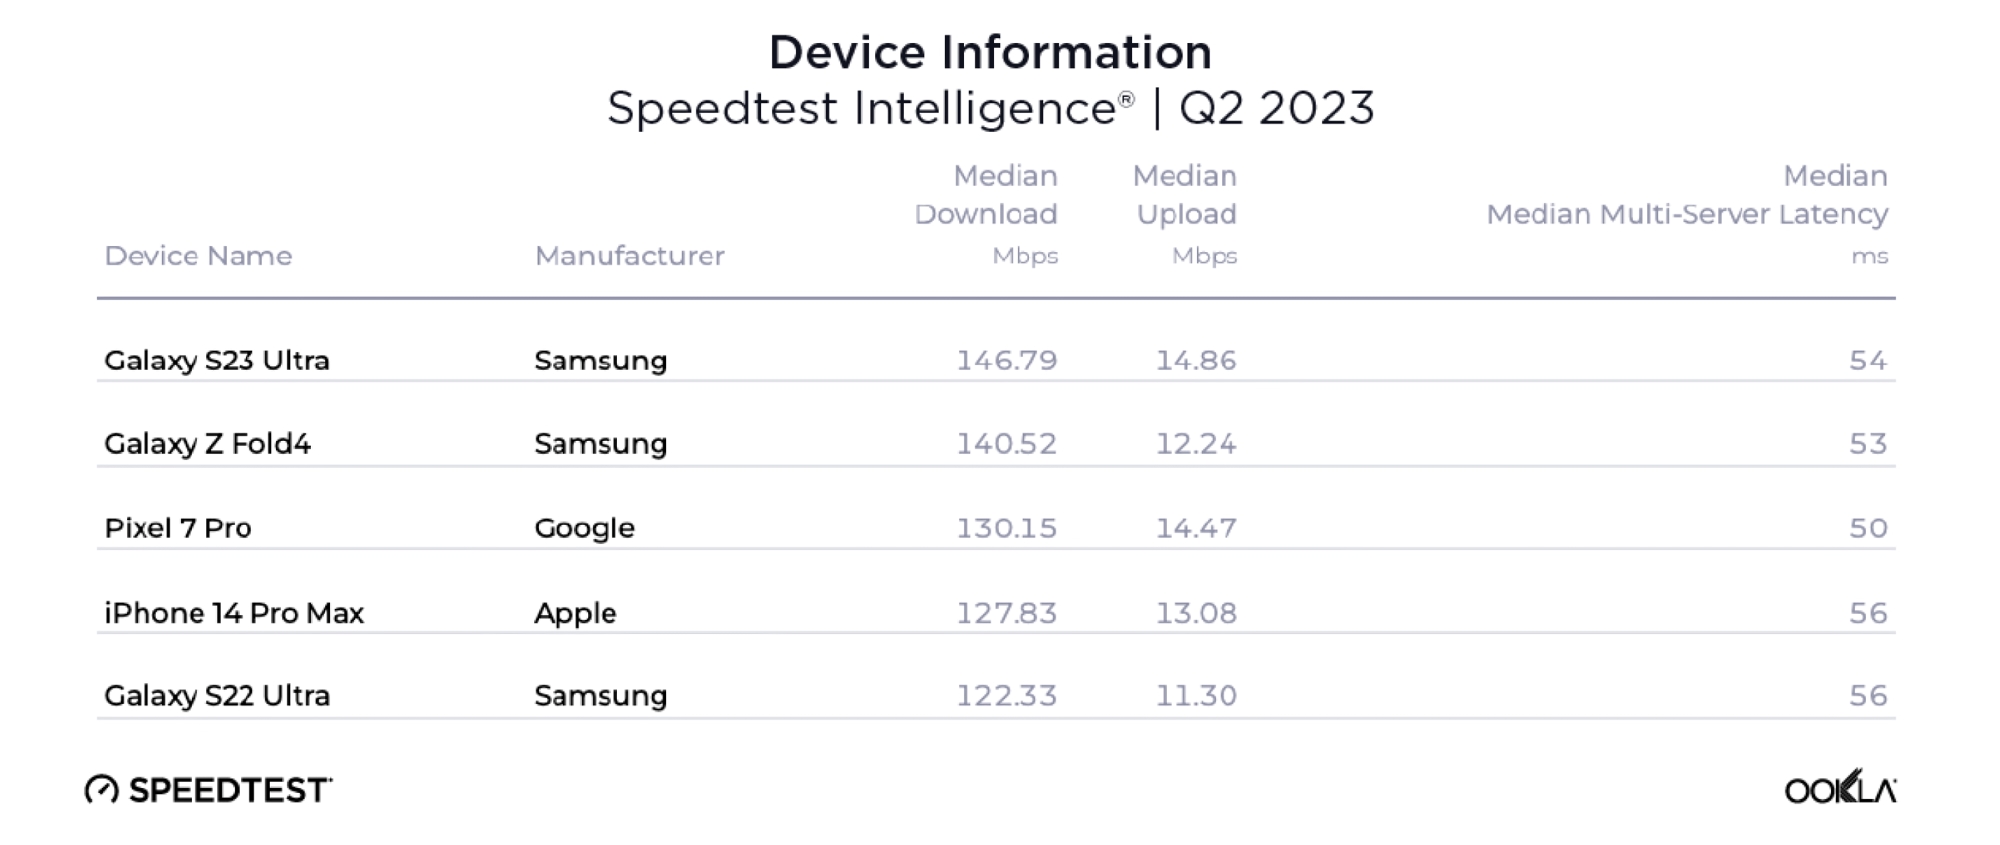 Tabela comparando as cinco principais velocidades de download e upload de smartphones do relatório de julho de 2023 da Ookla.